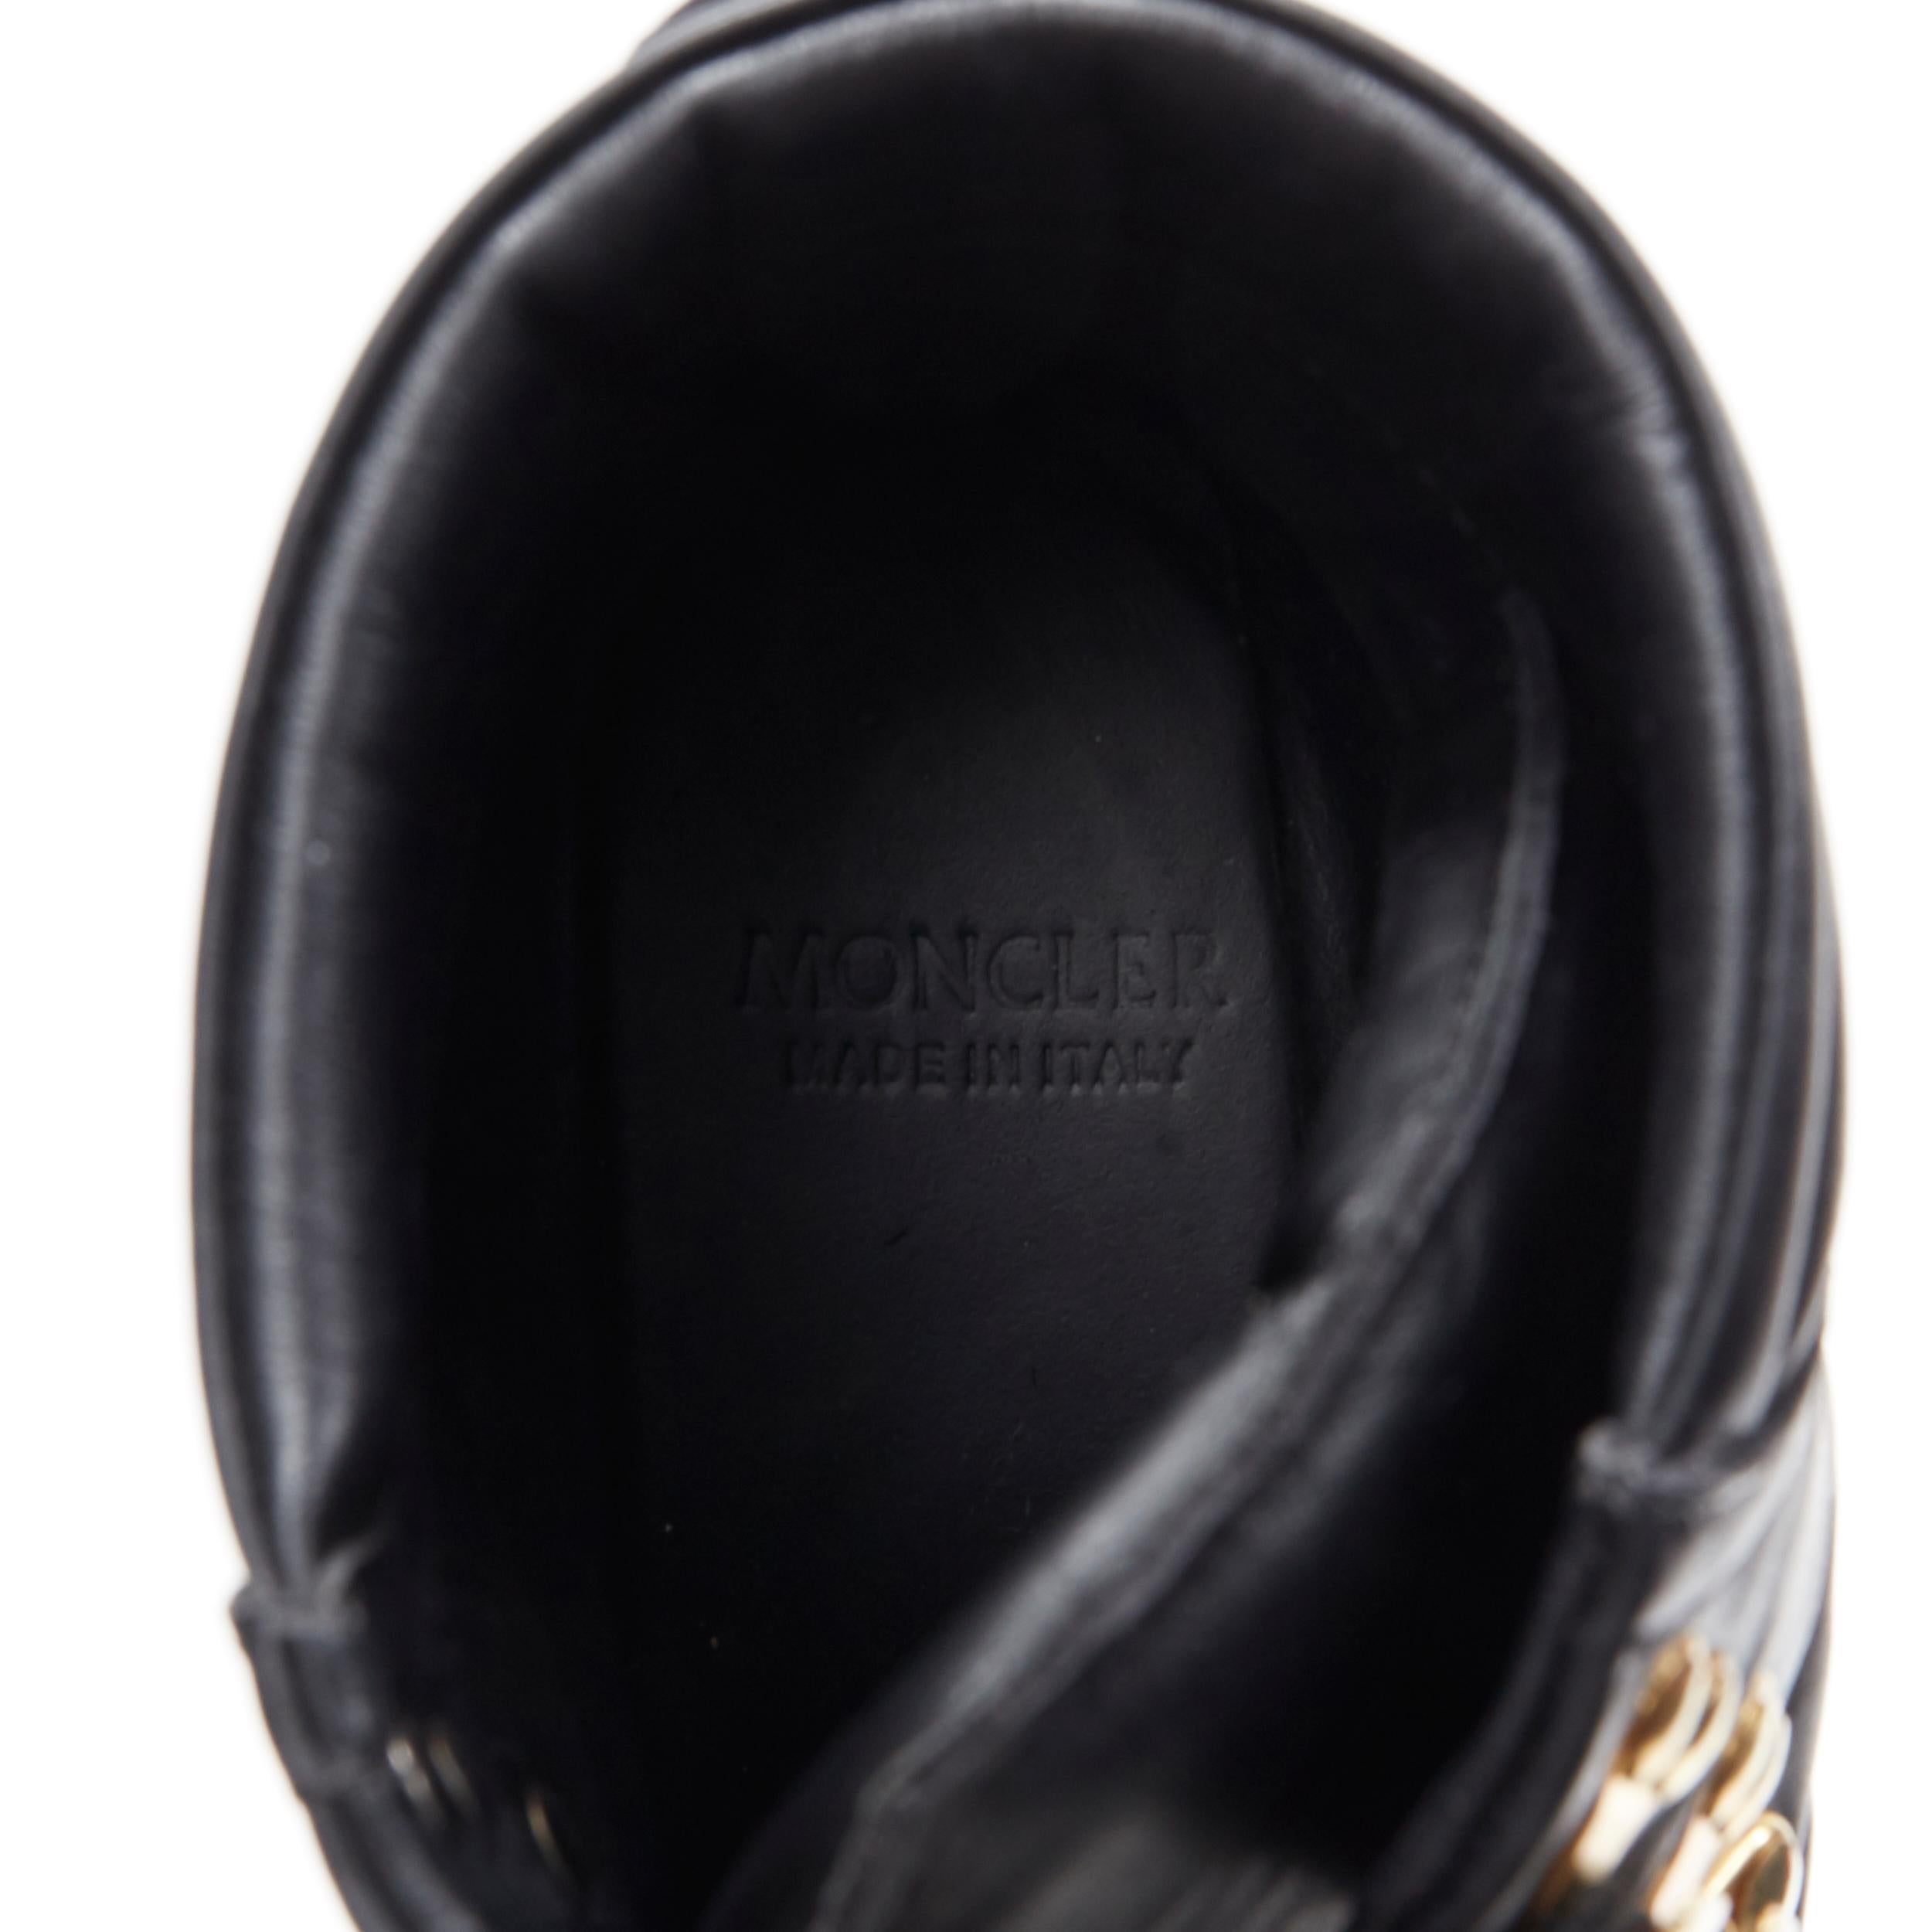 MONCLER black leather concealed high heel wedge paltform hiking ankle boot EU38 2